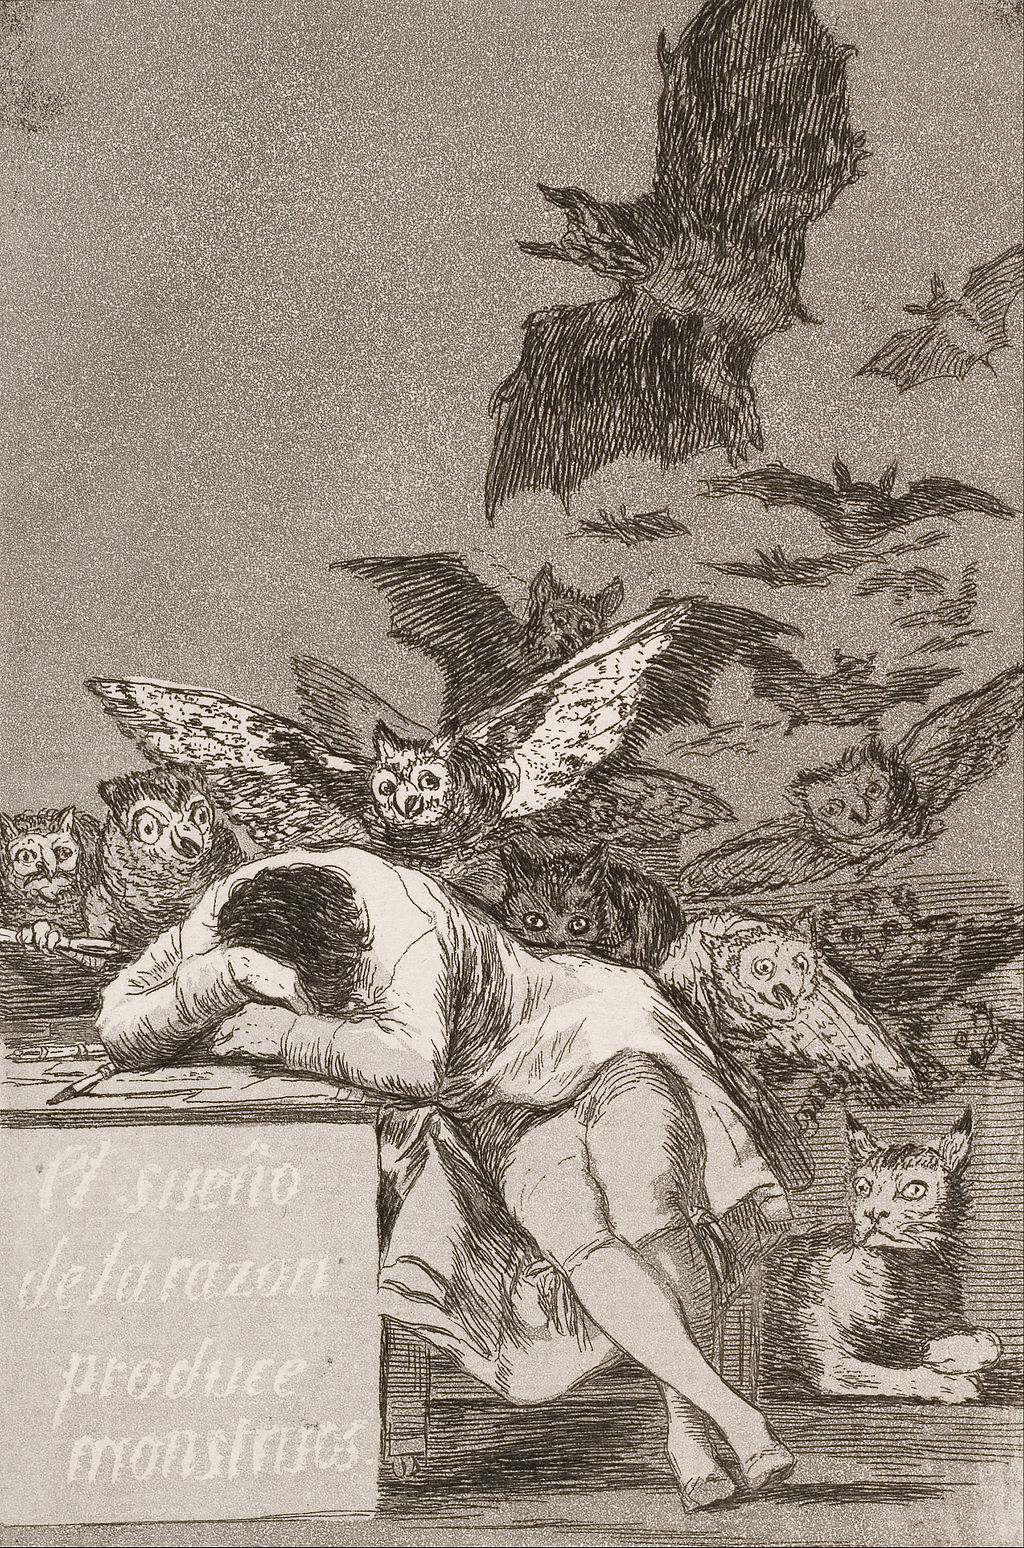 Francisco_José_de_Goya_y_Lucientes_-_The_sleep_of_reason_produces_monsters